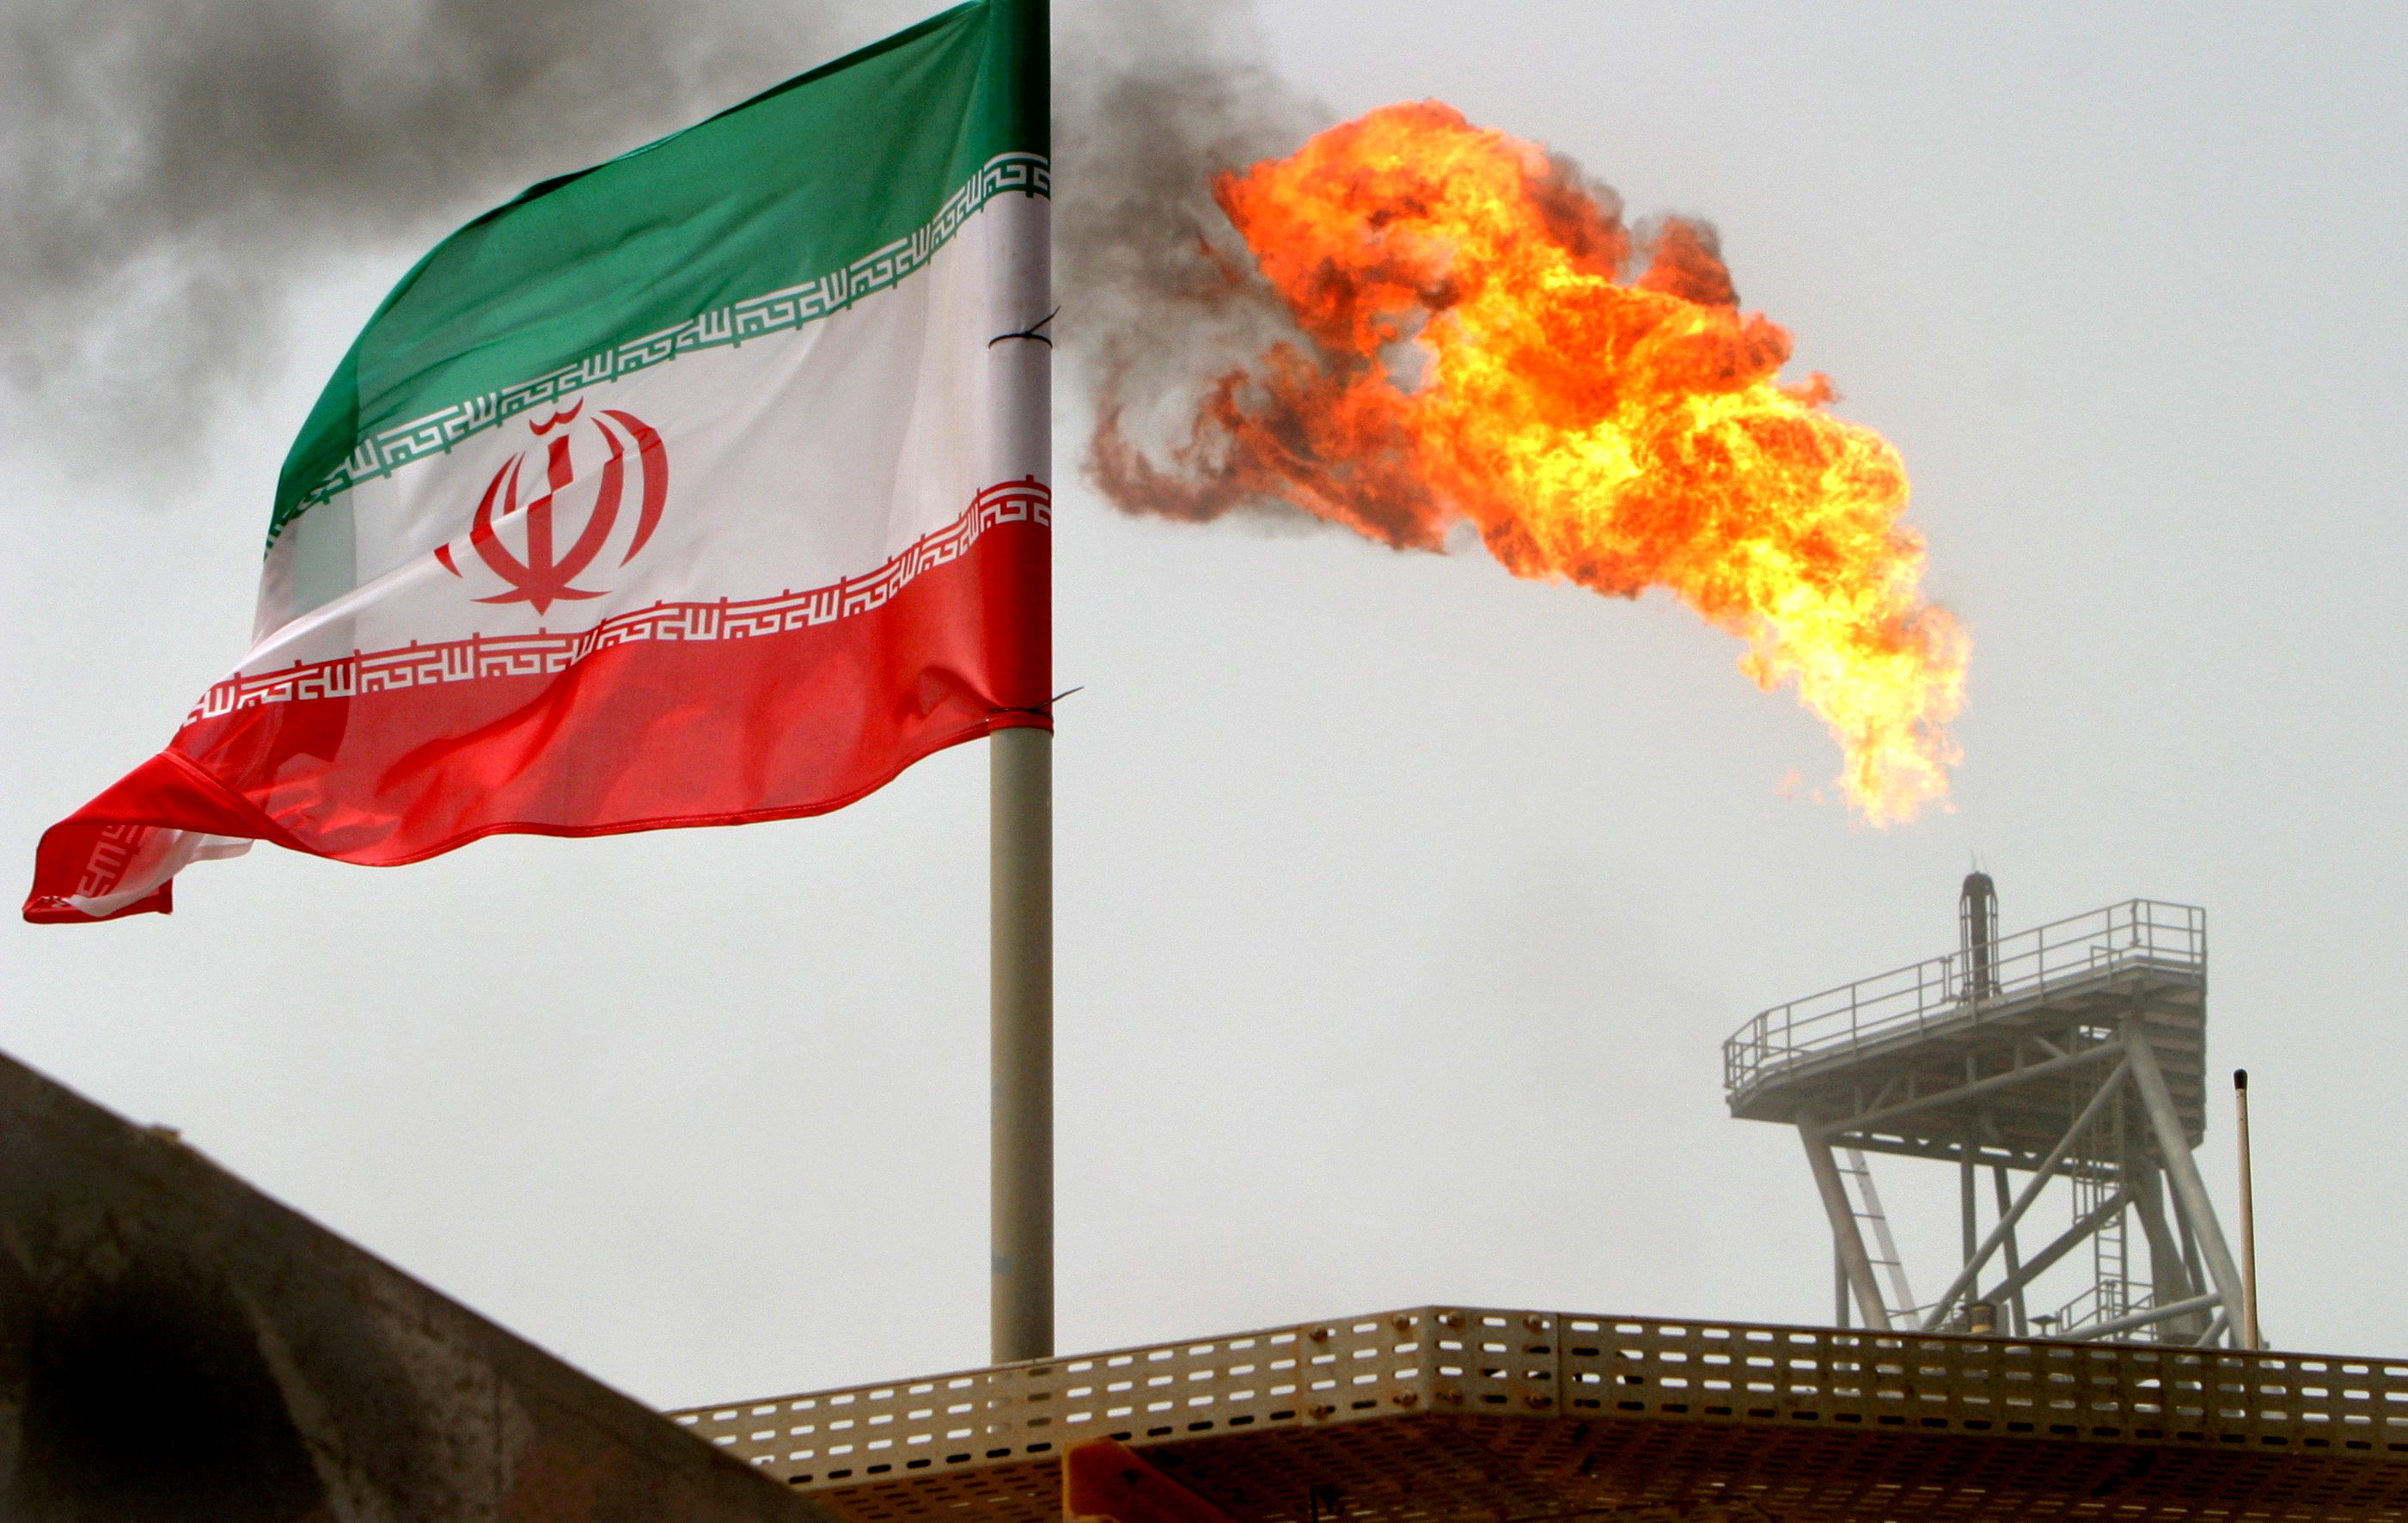 منصة لإنتاج النفط في إيران.25 يوليو 2005. رويترز / راهب هومافاندي 